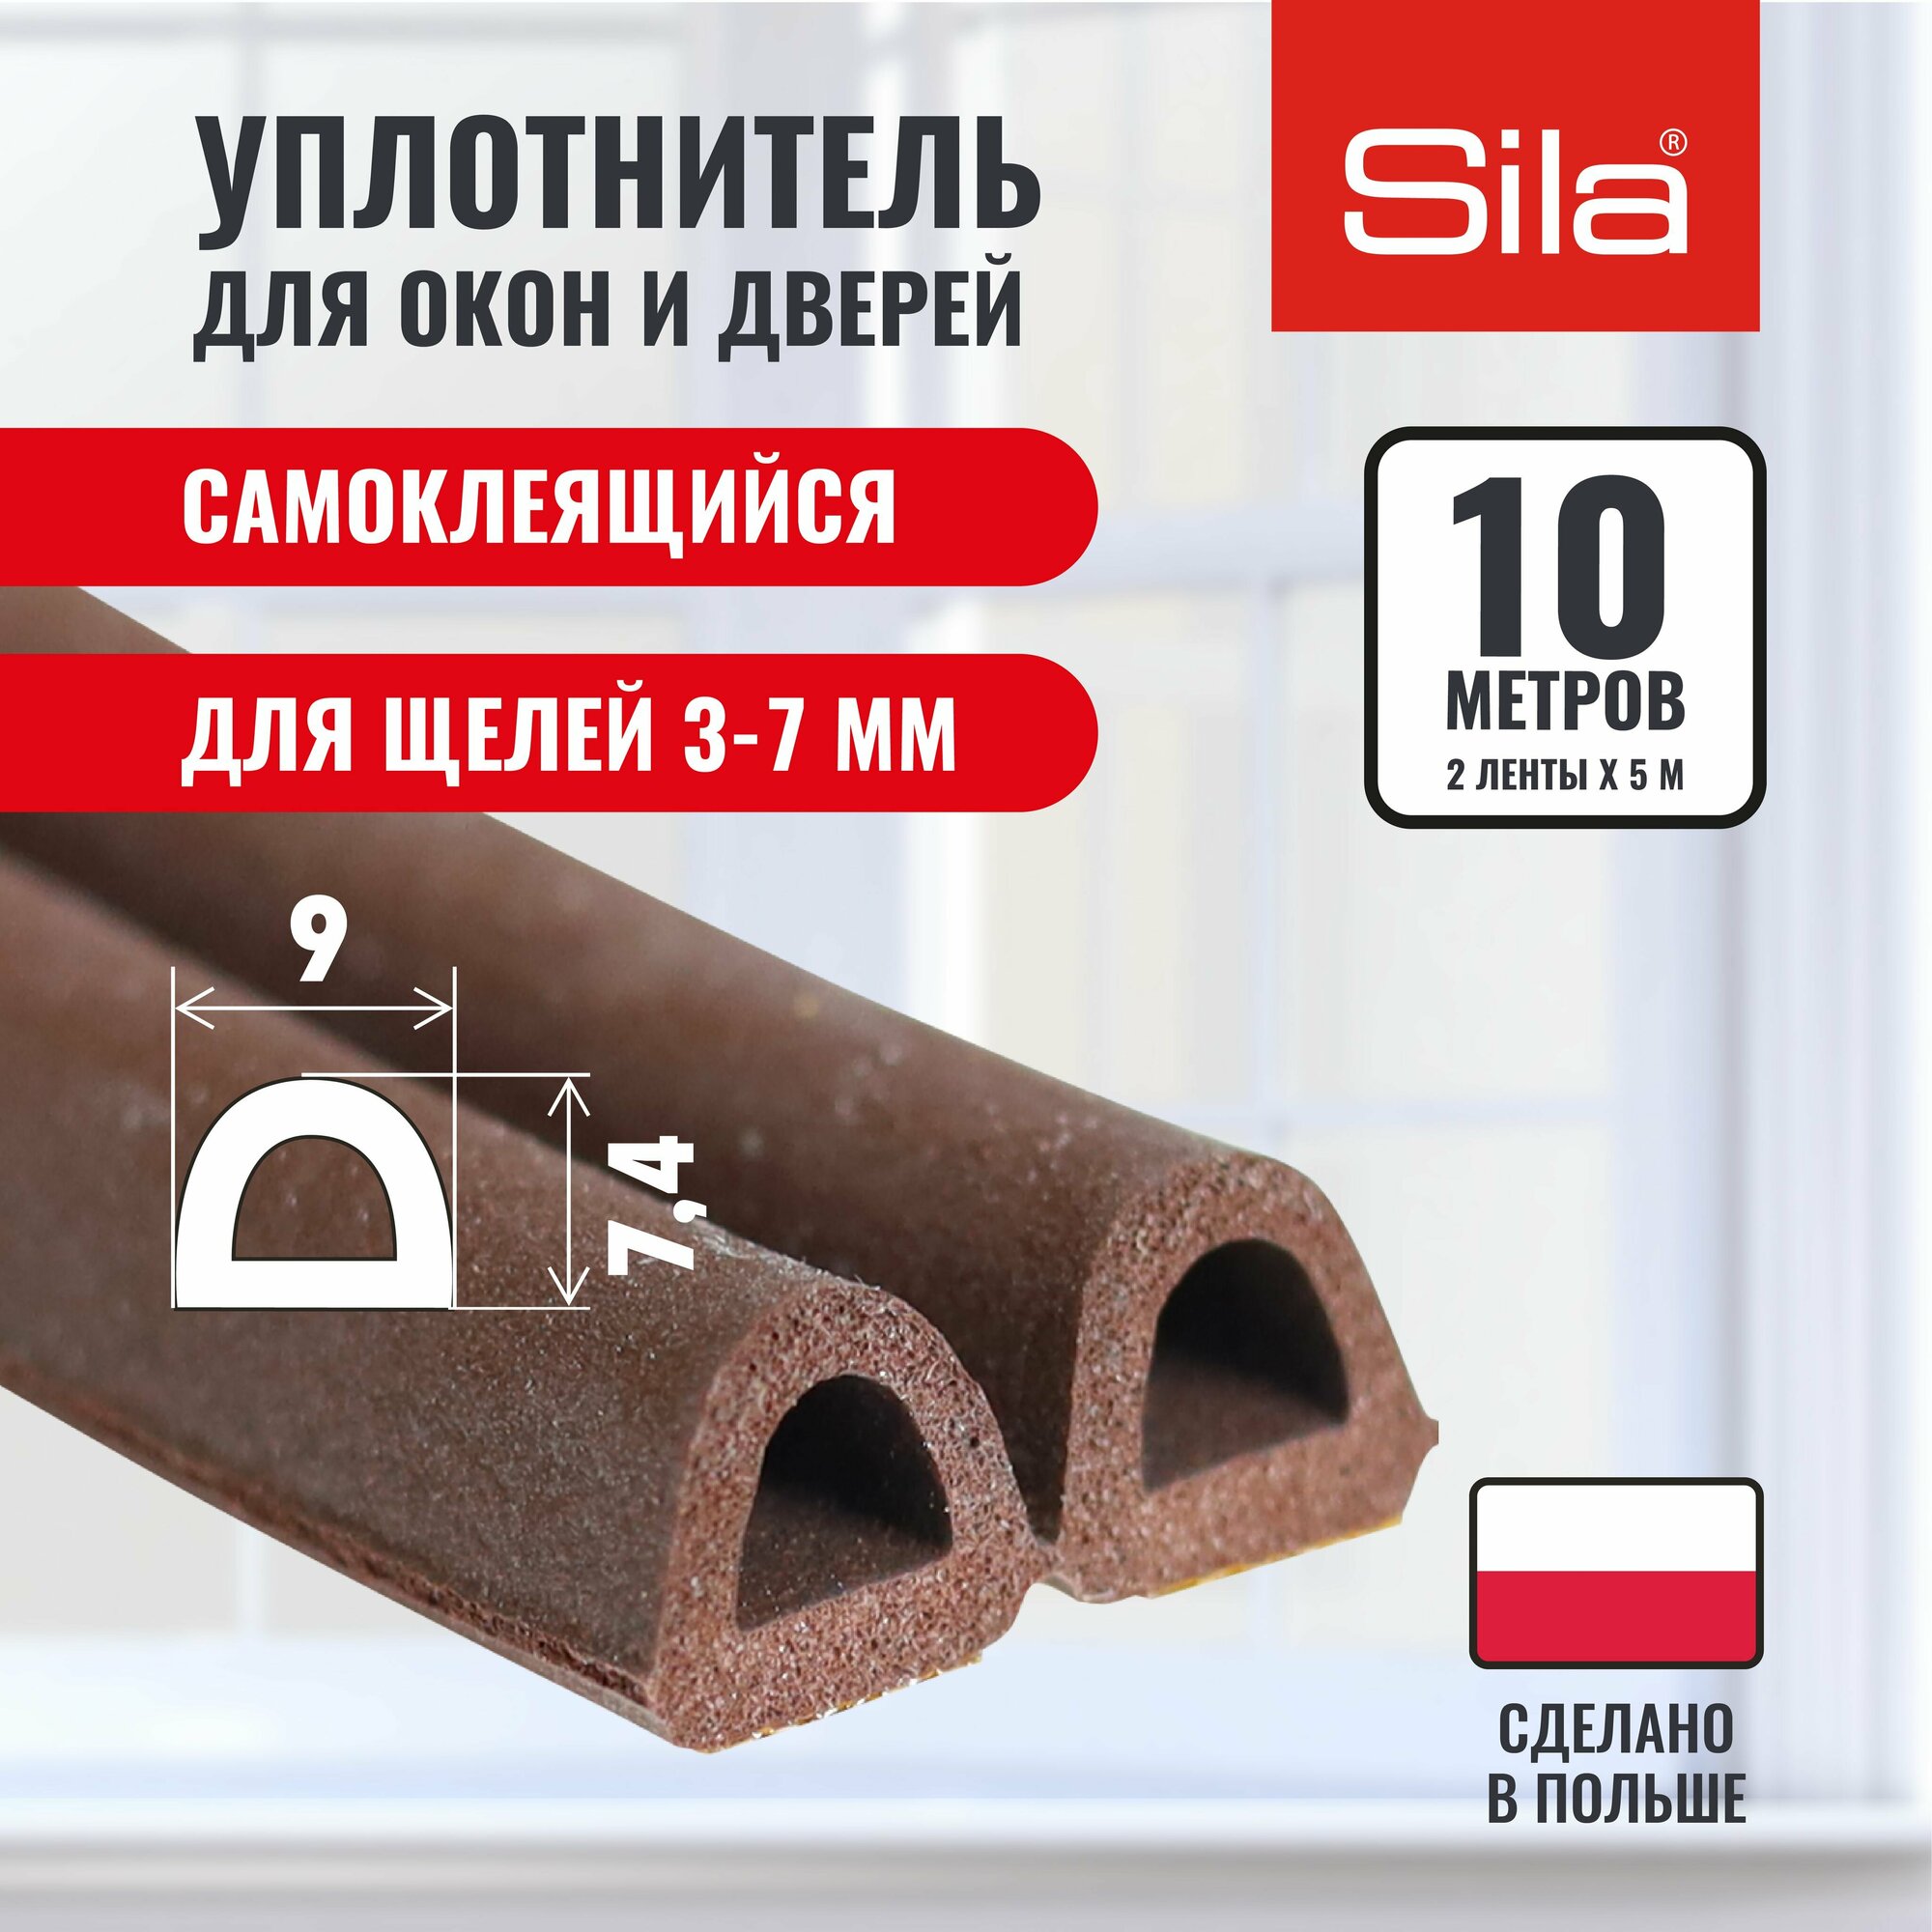 Уплотнитель для окон и дверей SILA D-профиль, 9х7,4мм, 10 метров (2х5м), коричневый, самоклеящийся SILADВ10